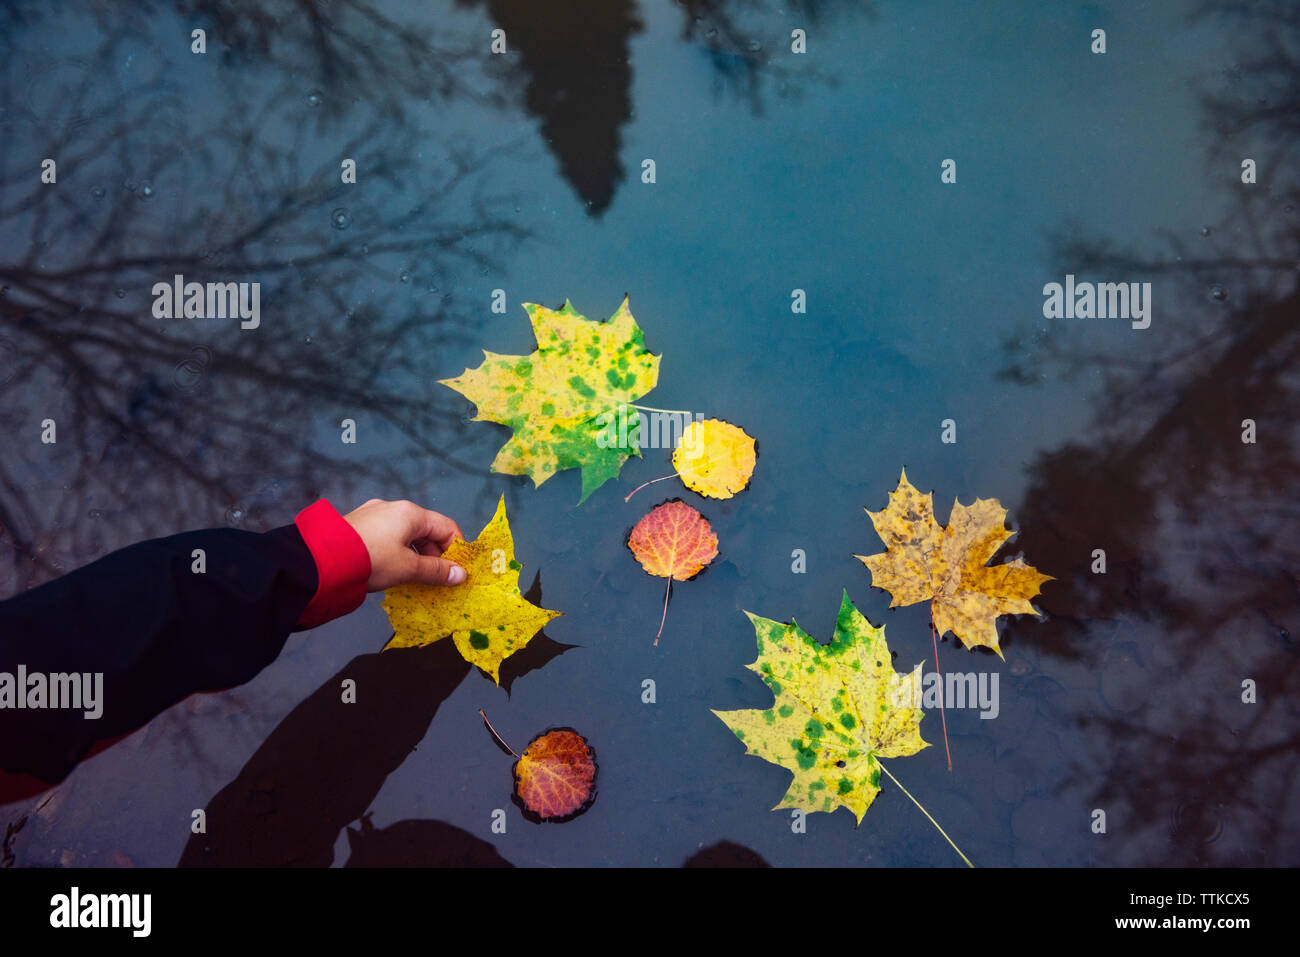 Immagine ritagliata della mano che tiene foglie galleggianti in acqua Foto Stock